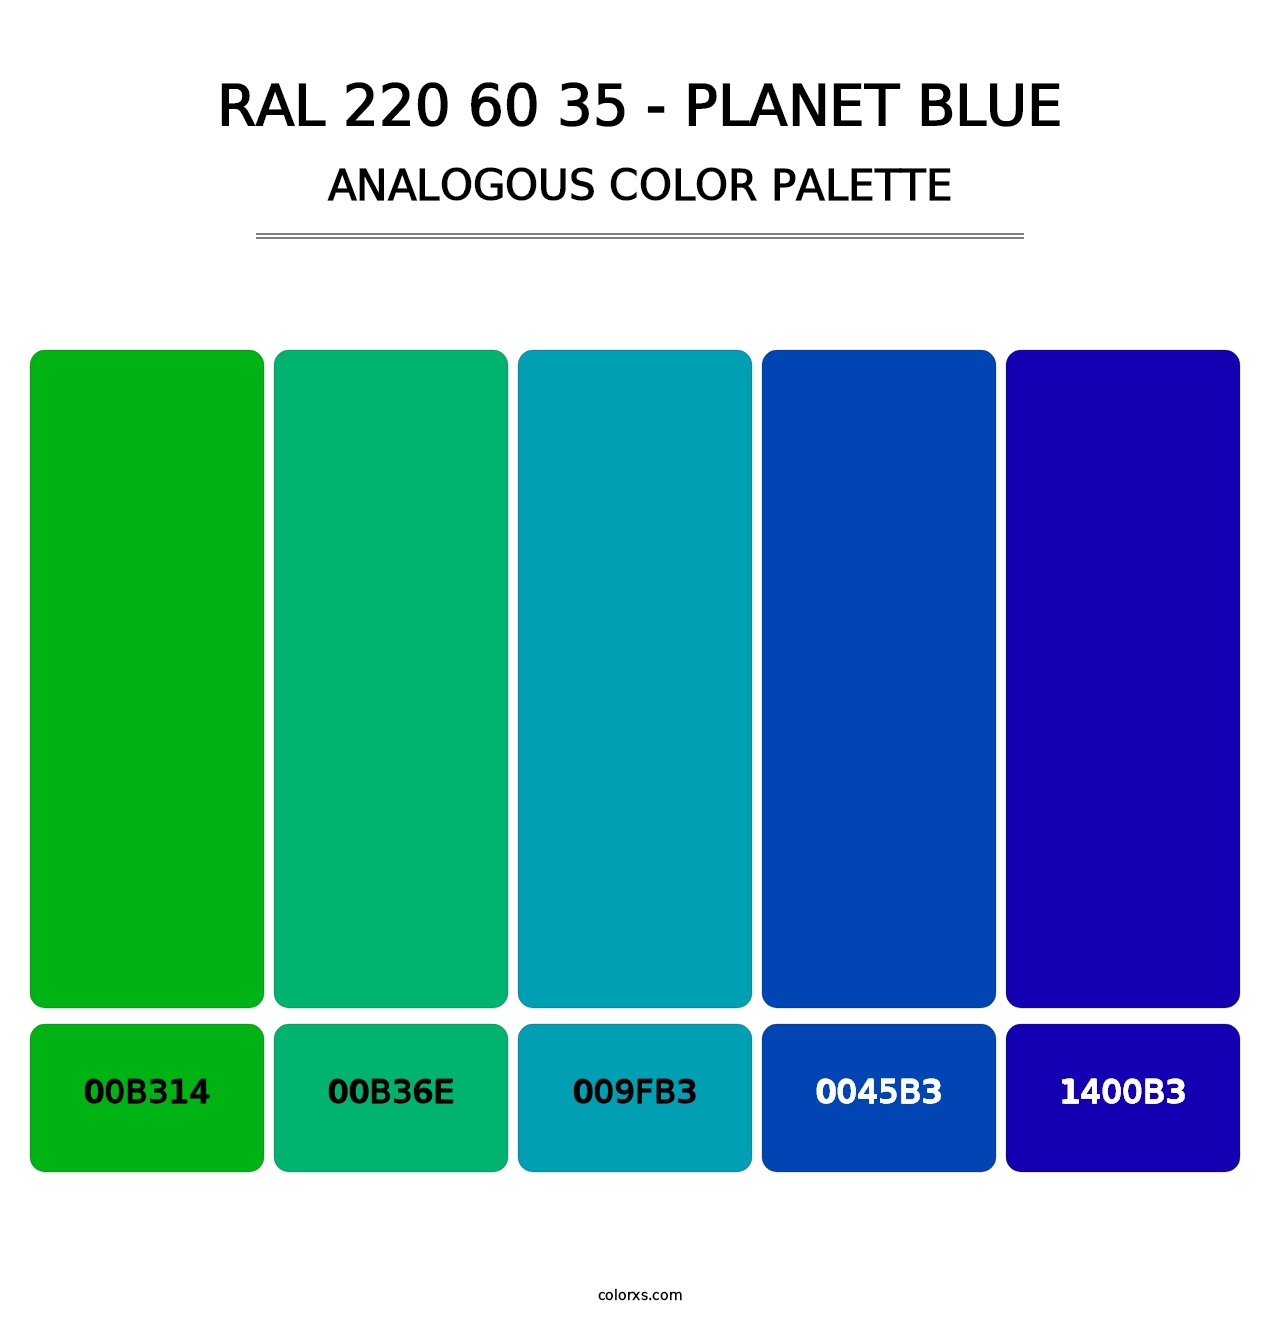 RAL 220 60 35 - Planet Blue - Analogous Color Palette